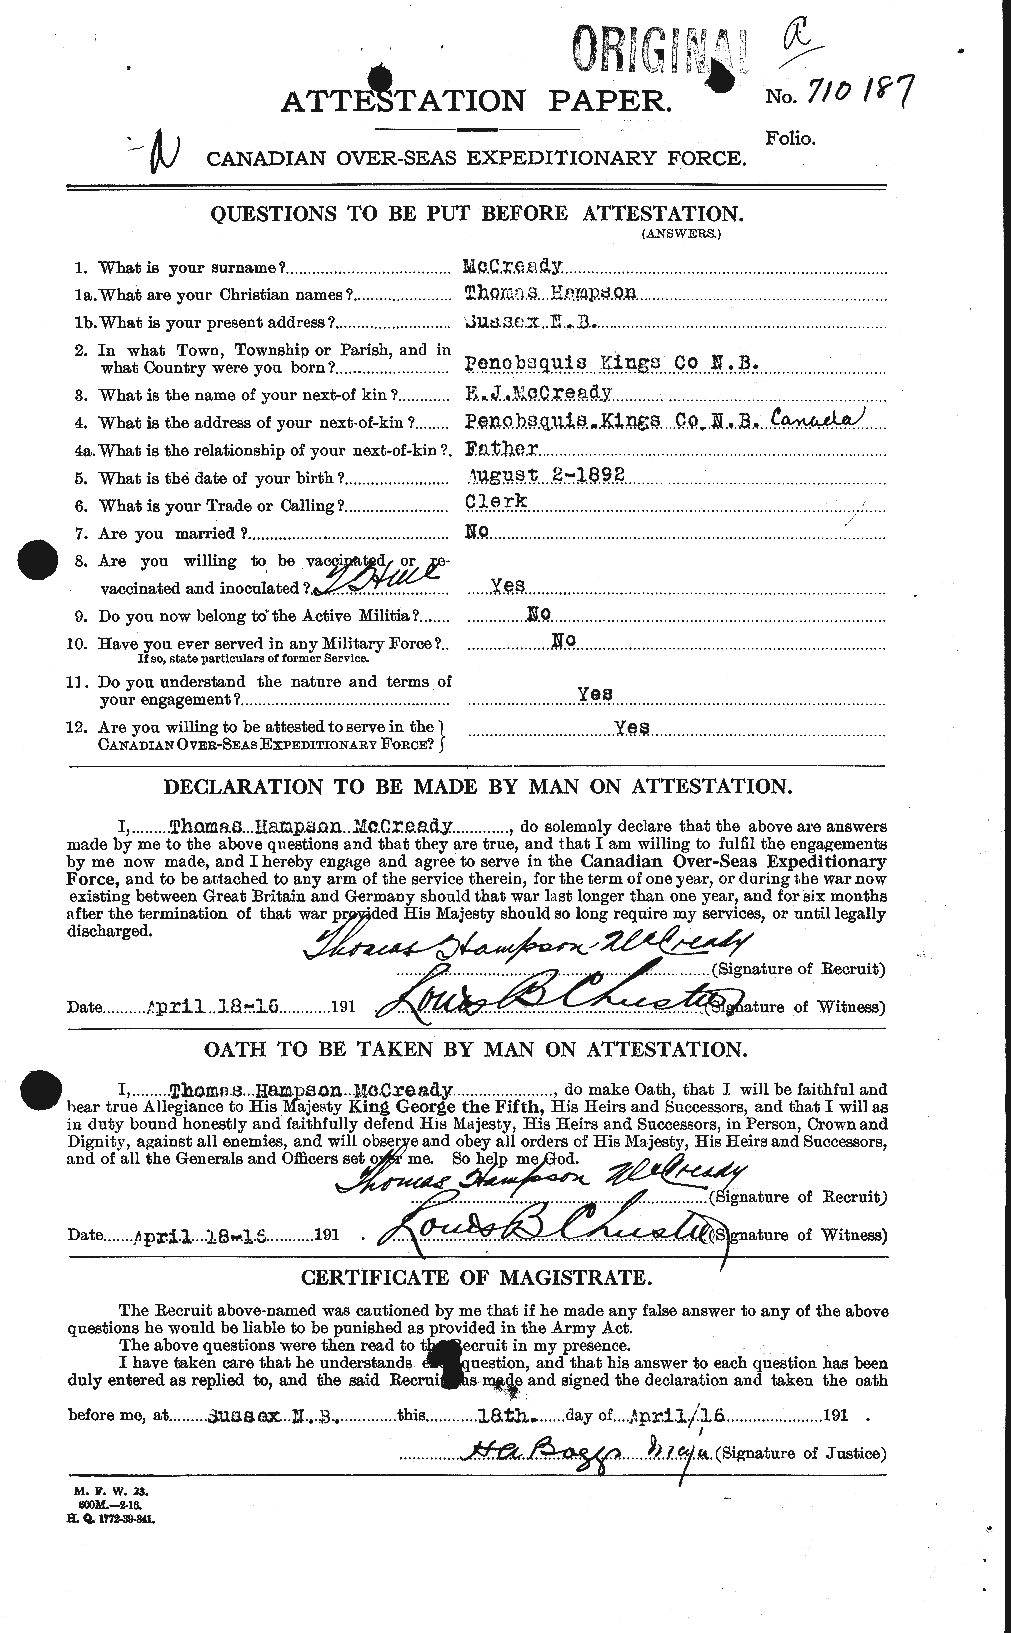 Dossiers du Personnel de la Première Guerre mondiale - CEC 136020a